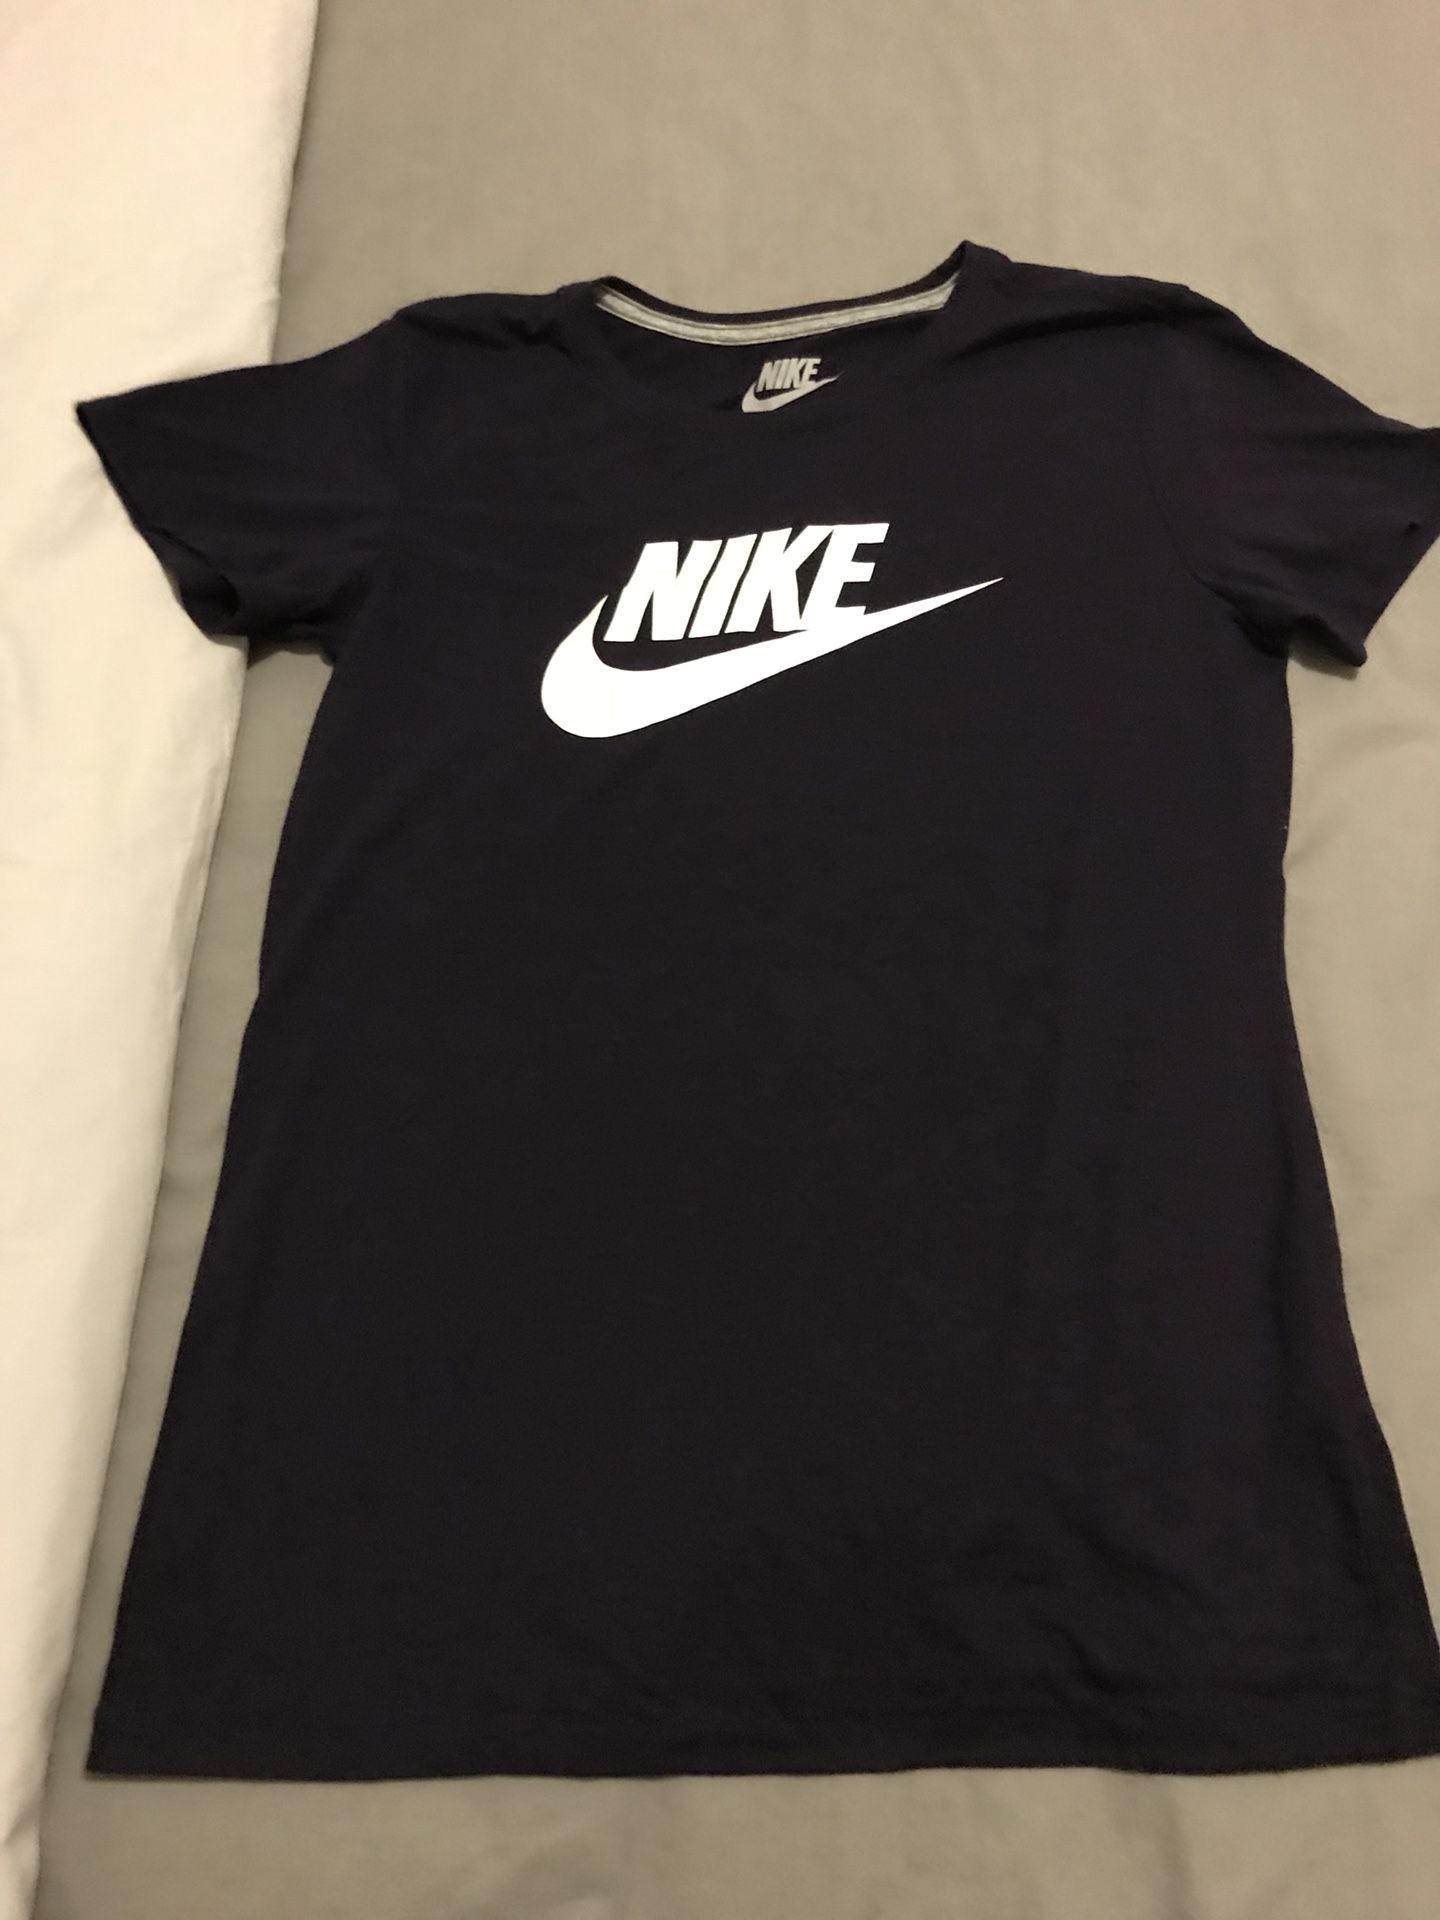 Nike t shirt new never used size medium